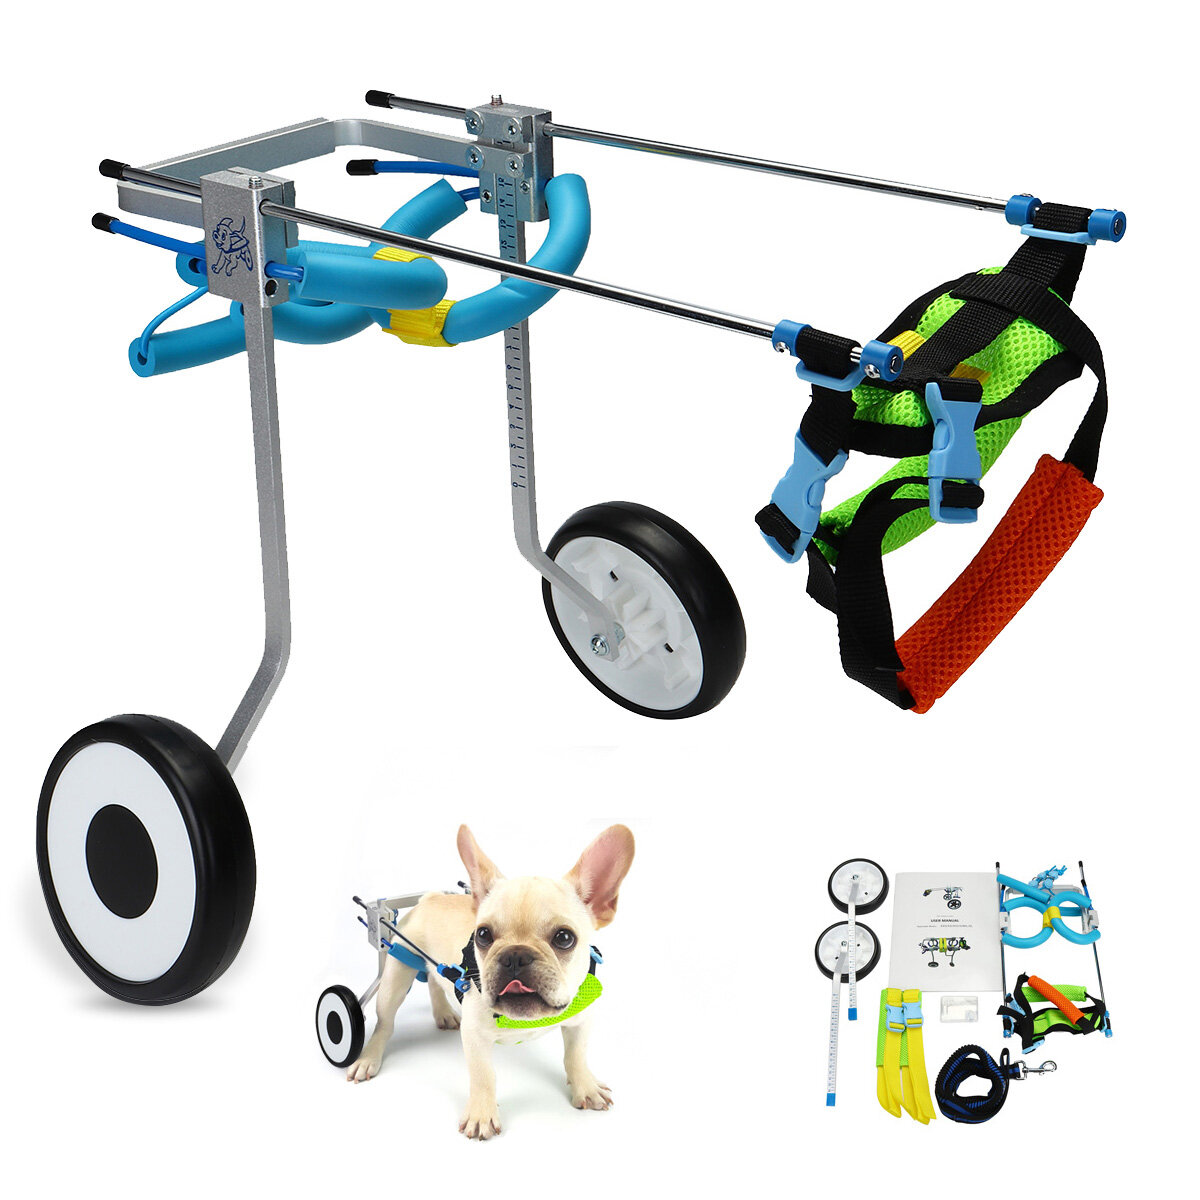 

Pet Собака Кот Инвалидная коляска, чтобы сделать инвалидов большими Собака / Собакаgie / Puppy Walk Применить тележку дл